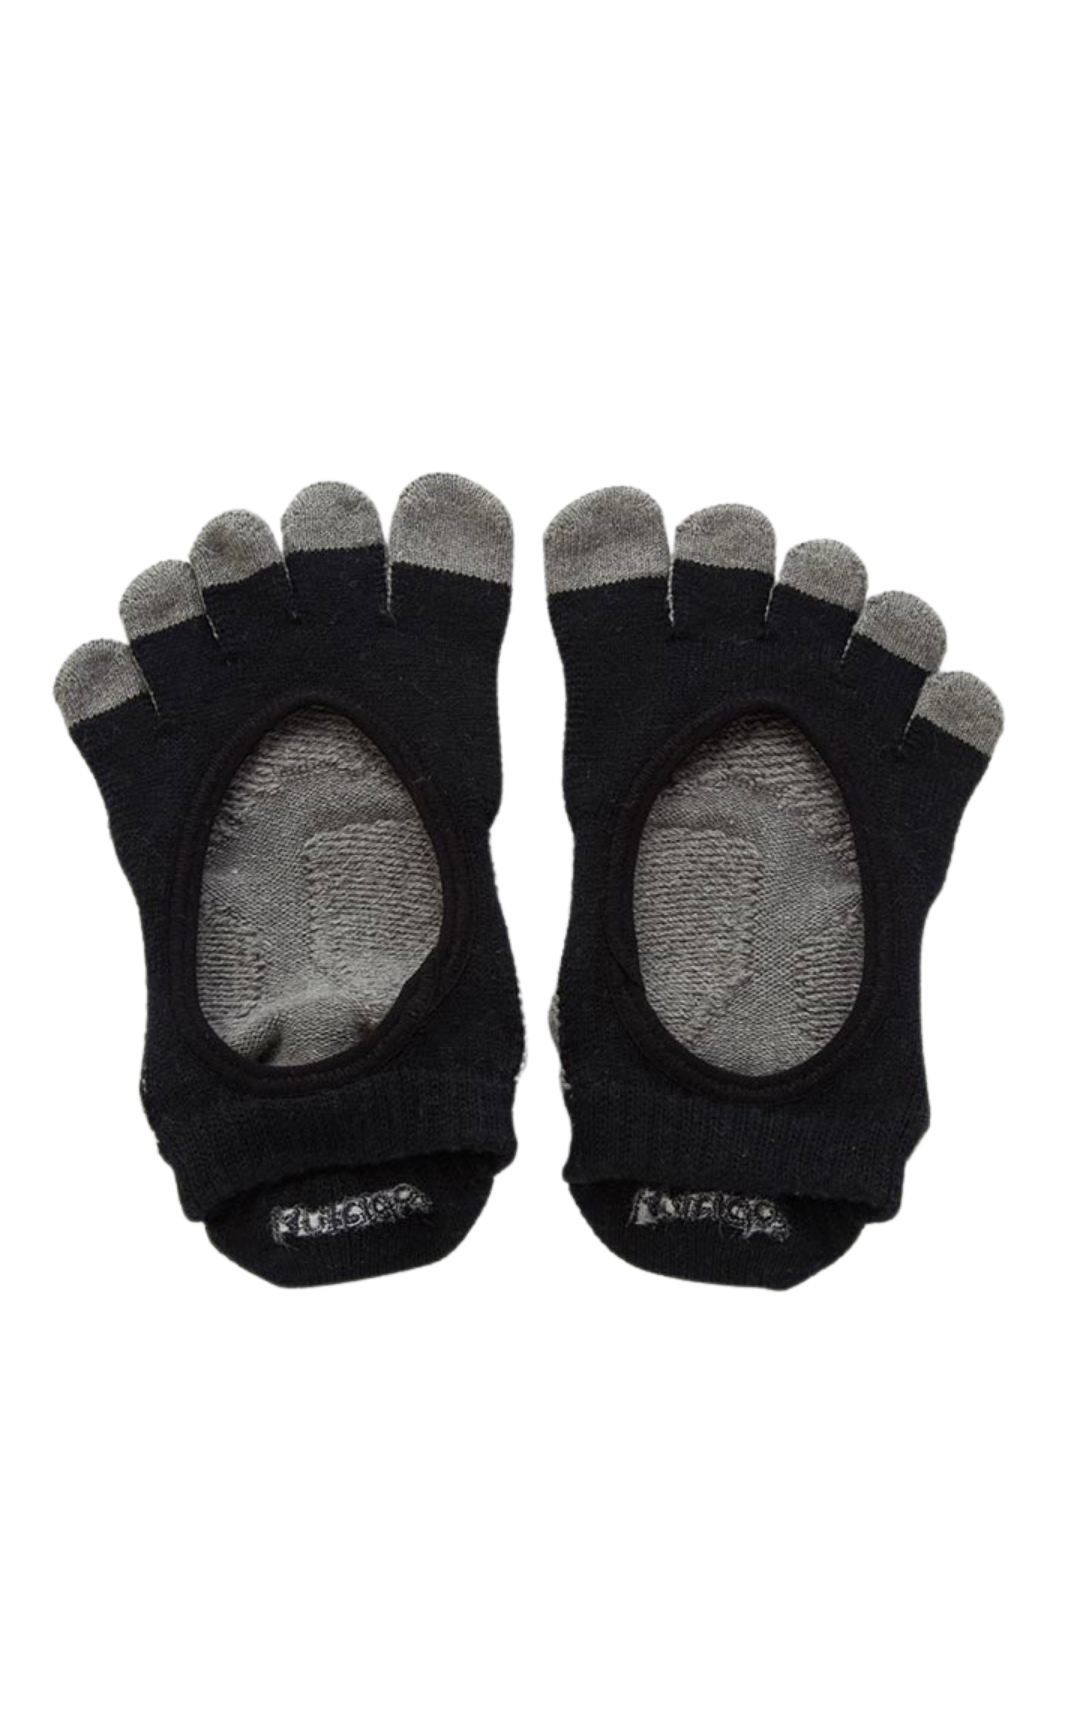 5207 organic cotton black toe pilates socks